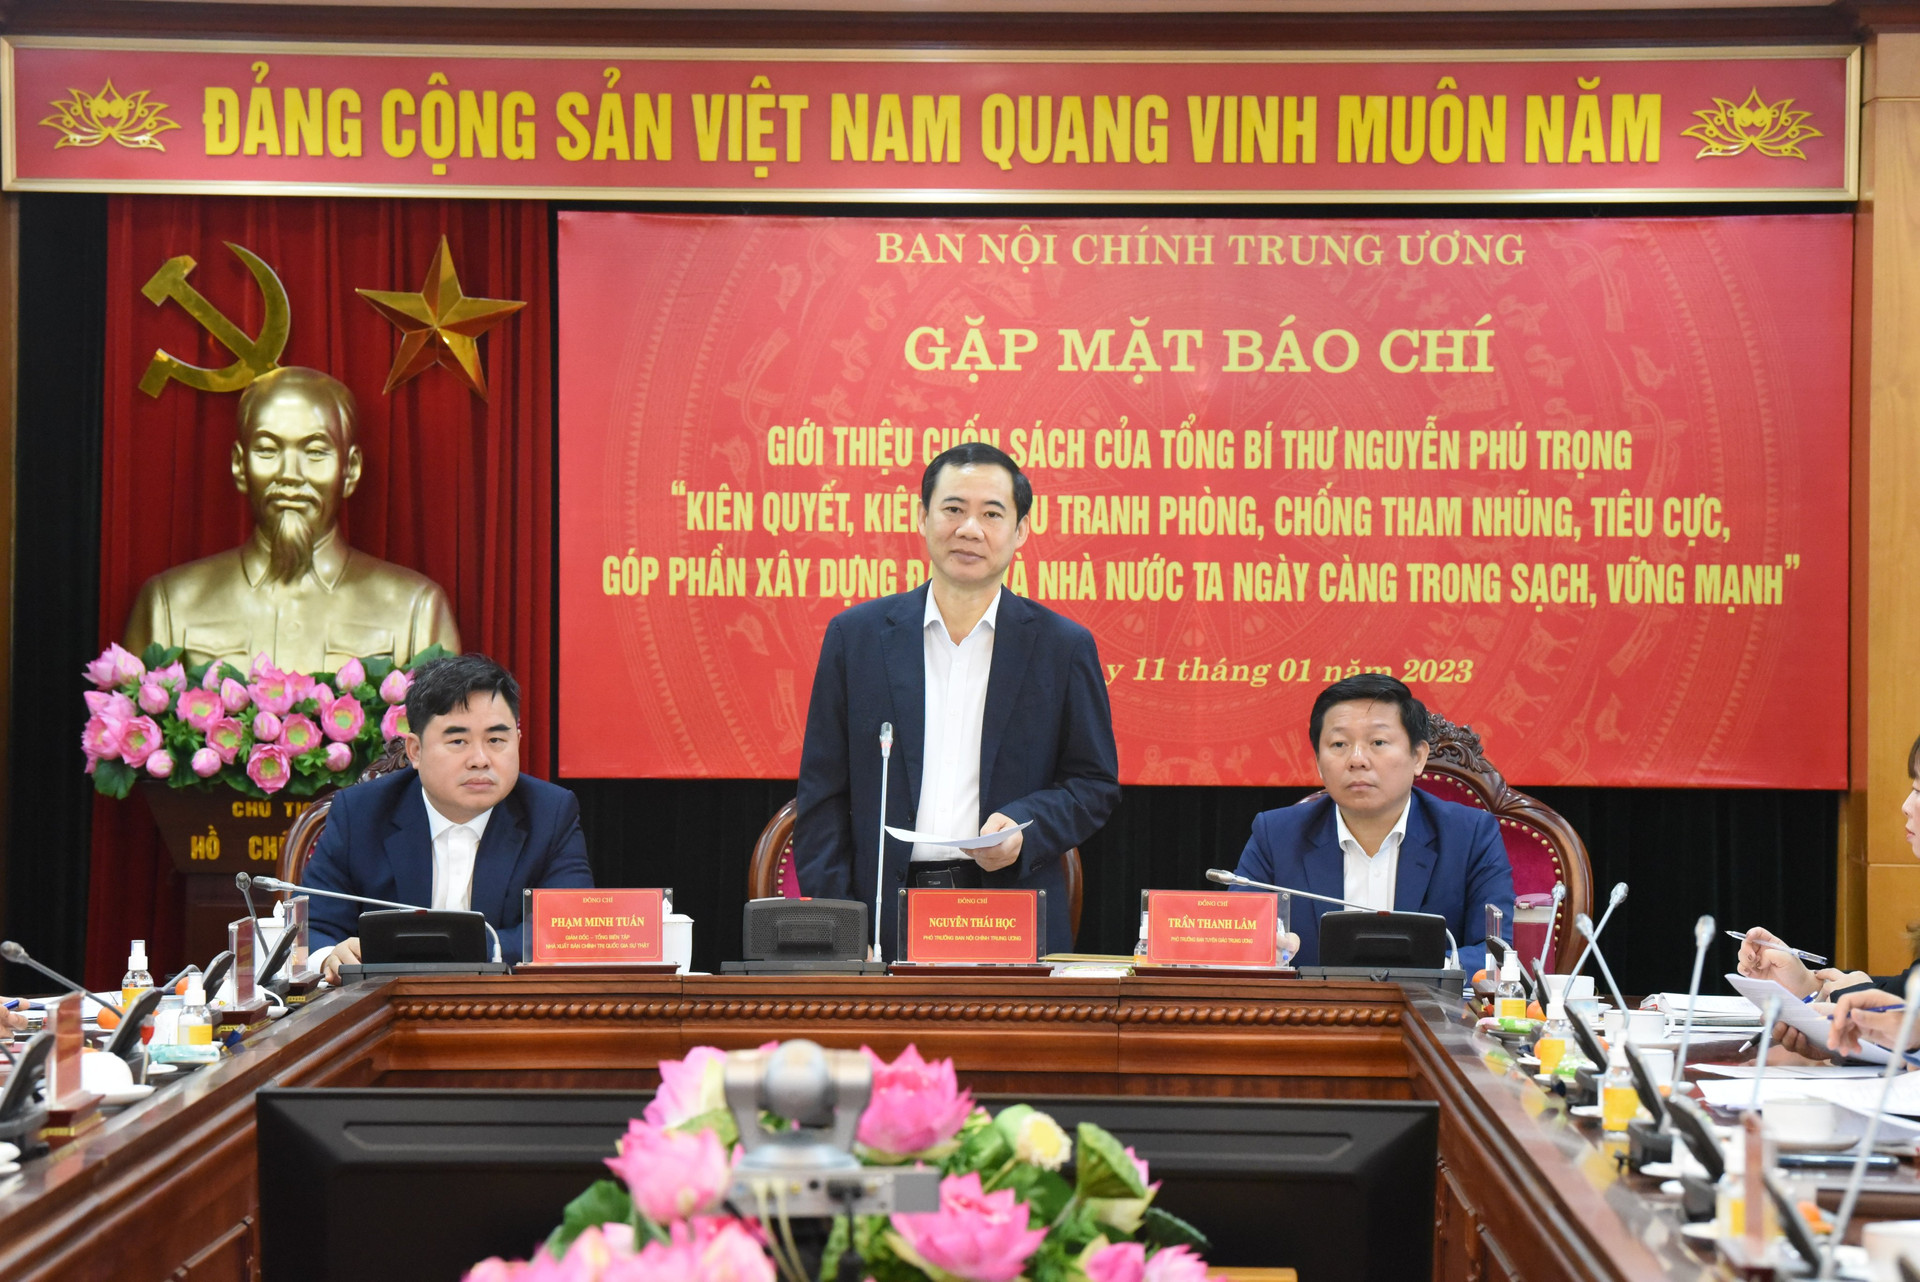 Ra mắt sách về phòng, chống tham nhũng của Tổng Bí thư Nguyễn Phú Trọng: Sự kiện quan trọng dịp kỷ niệm 93 năm Ngày thành lập Đảng Cộng sản Việt Nam